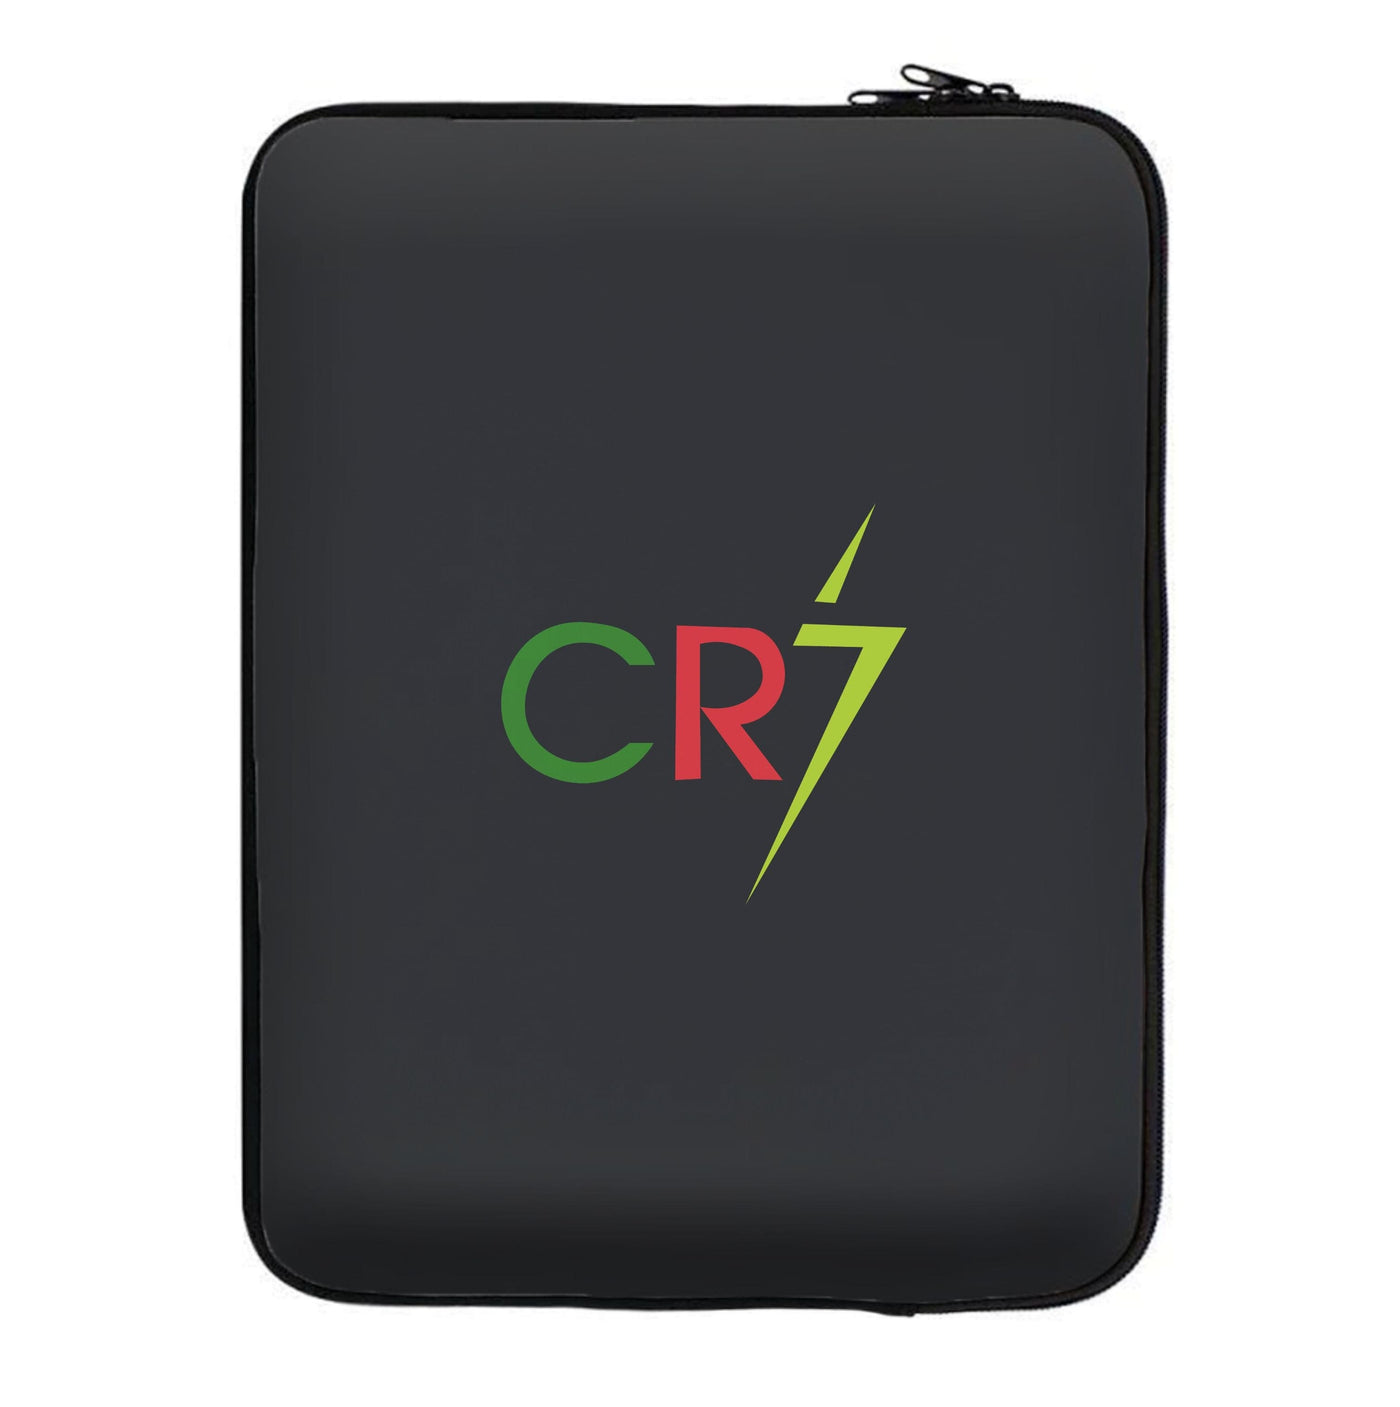 CR7 - Football Laptop Sleeve